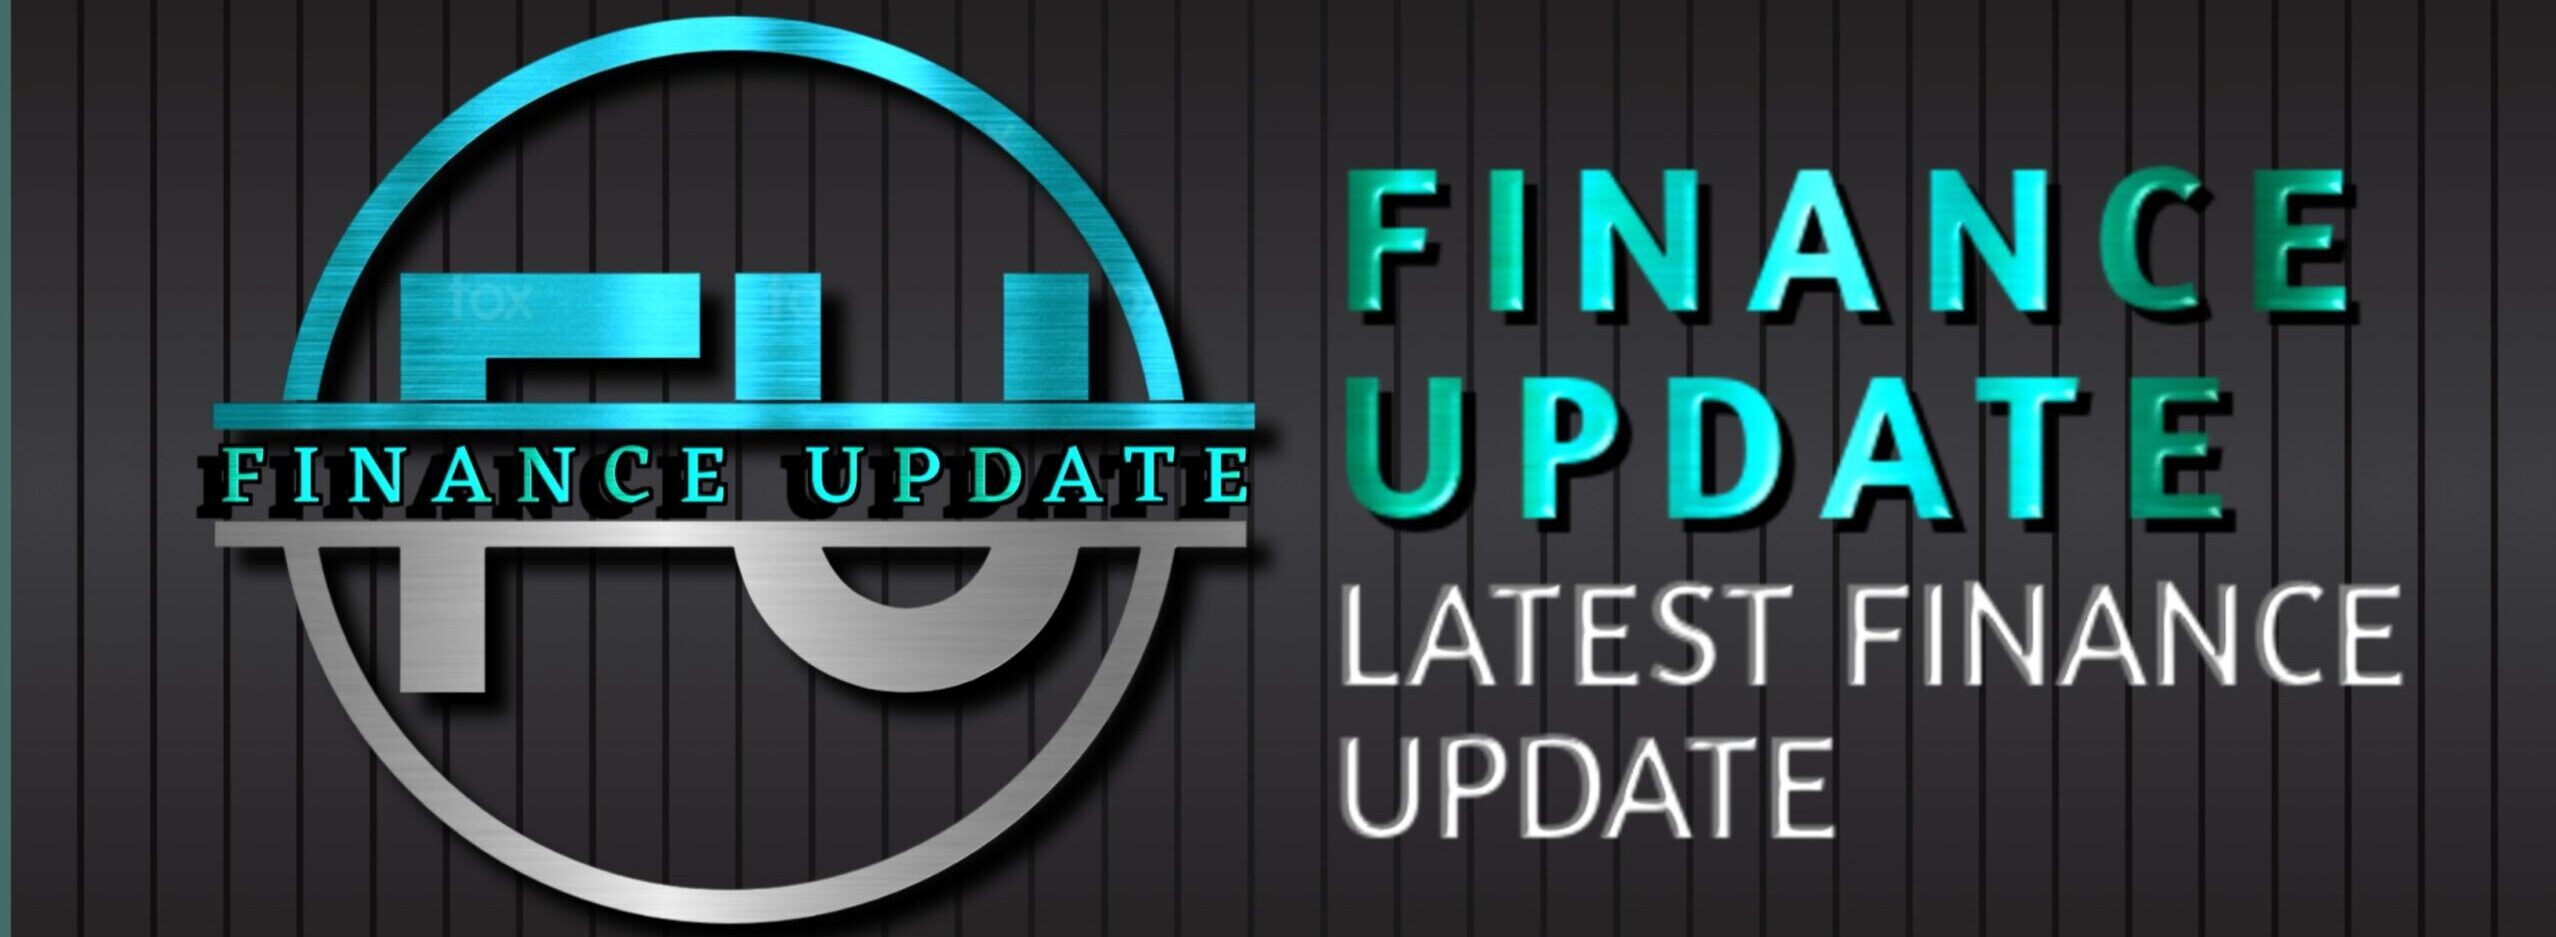 Finance Update